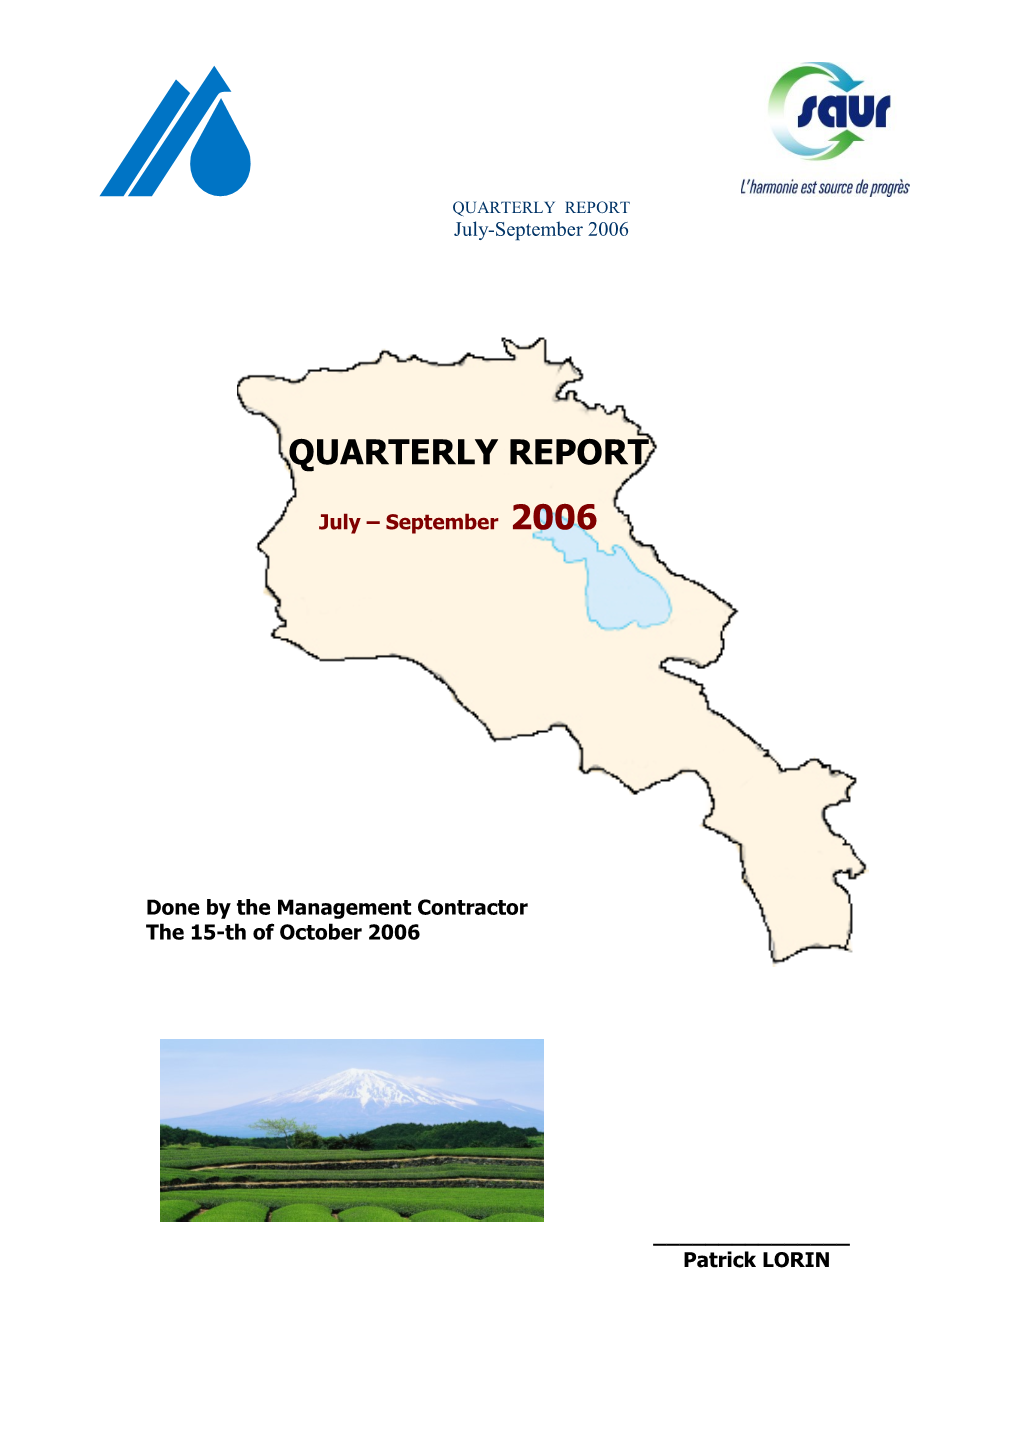 QUARTERLY REPORT July-September 2006